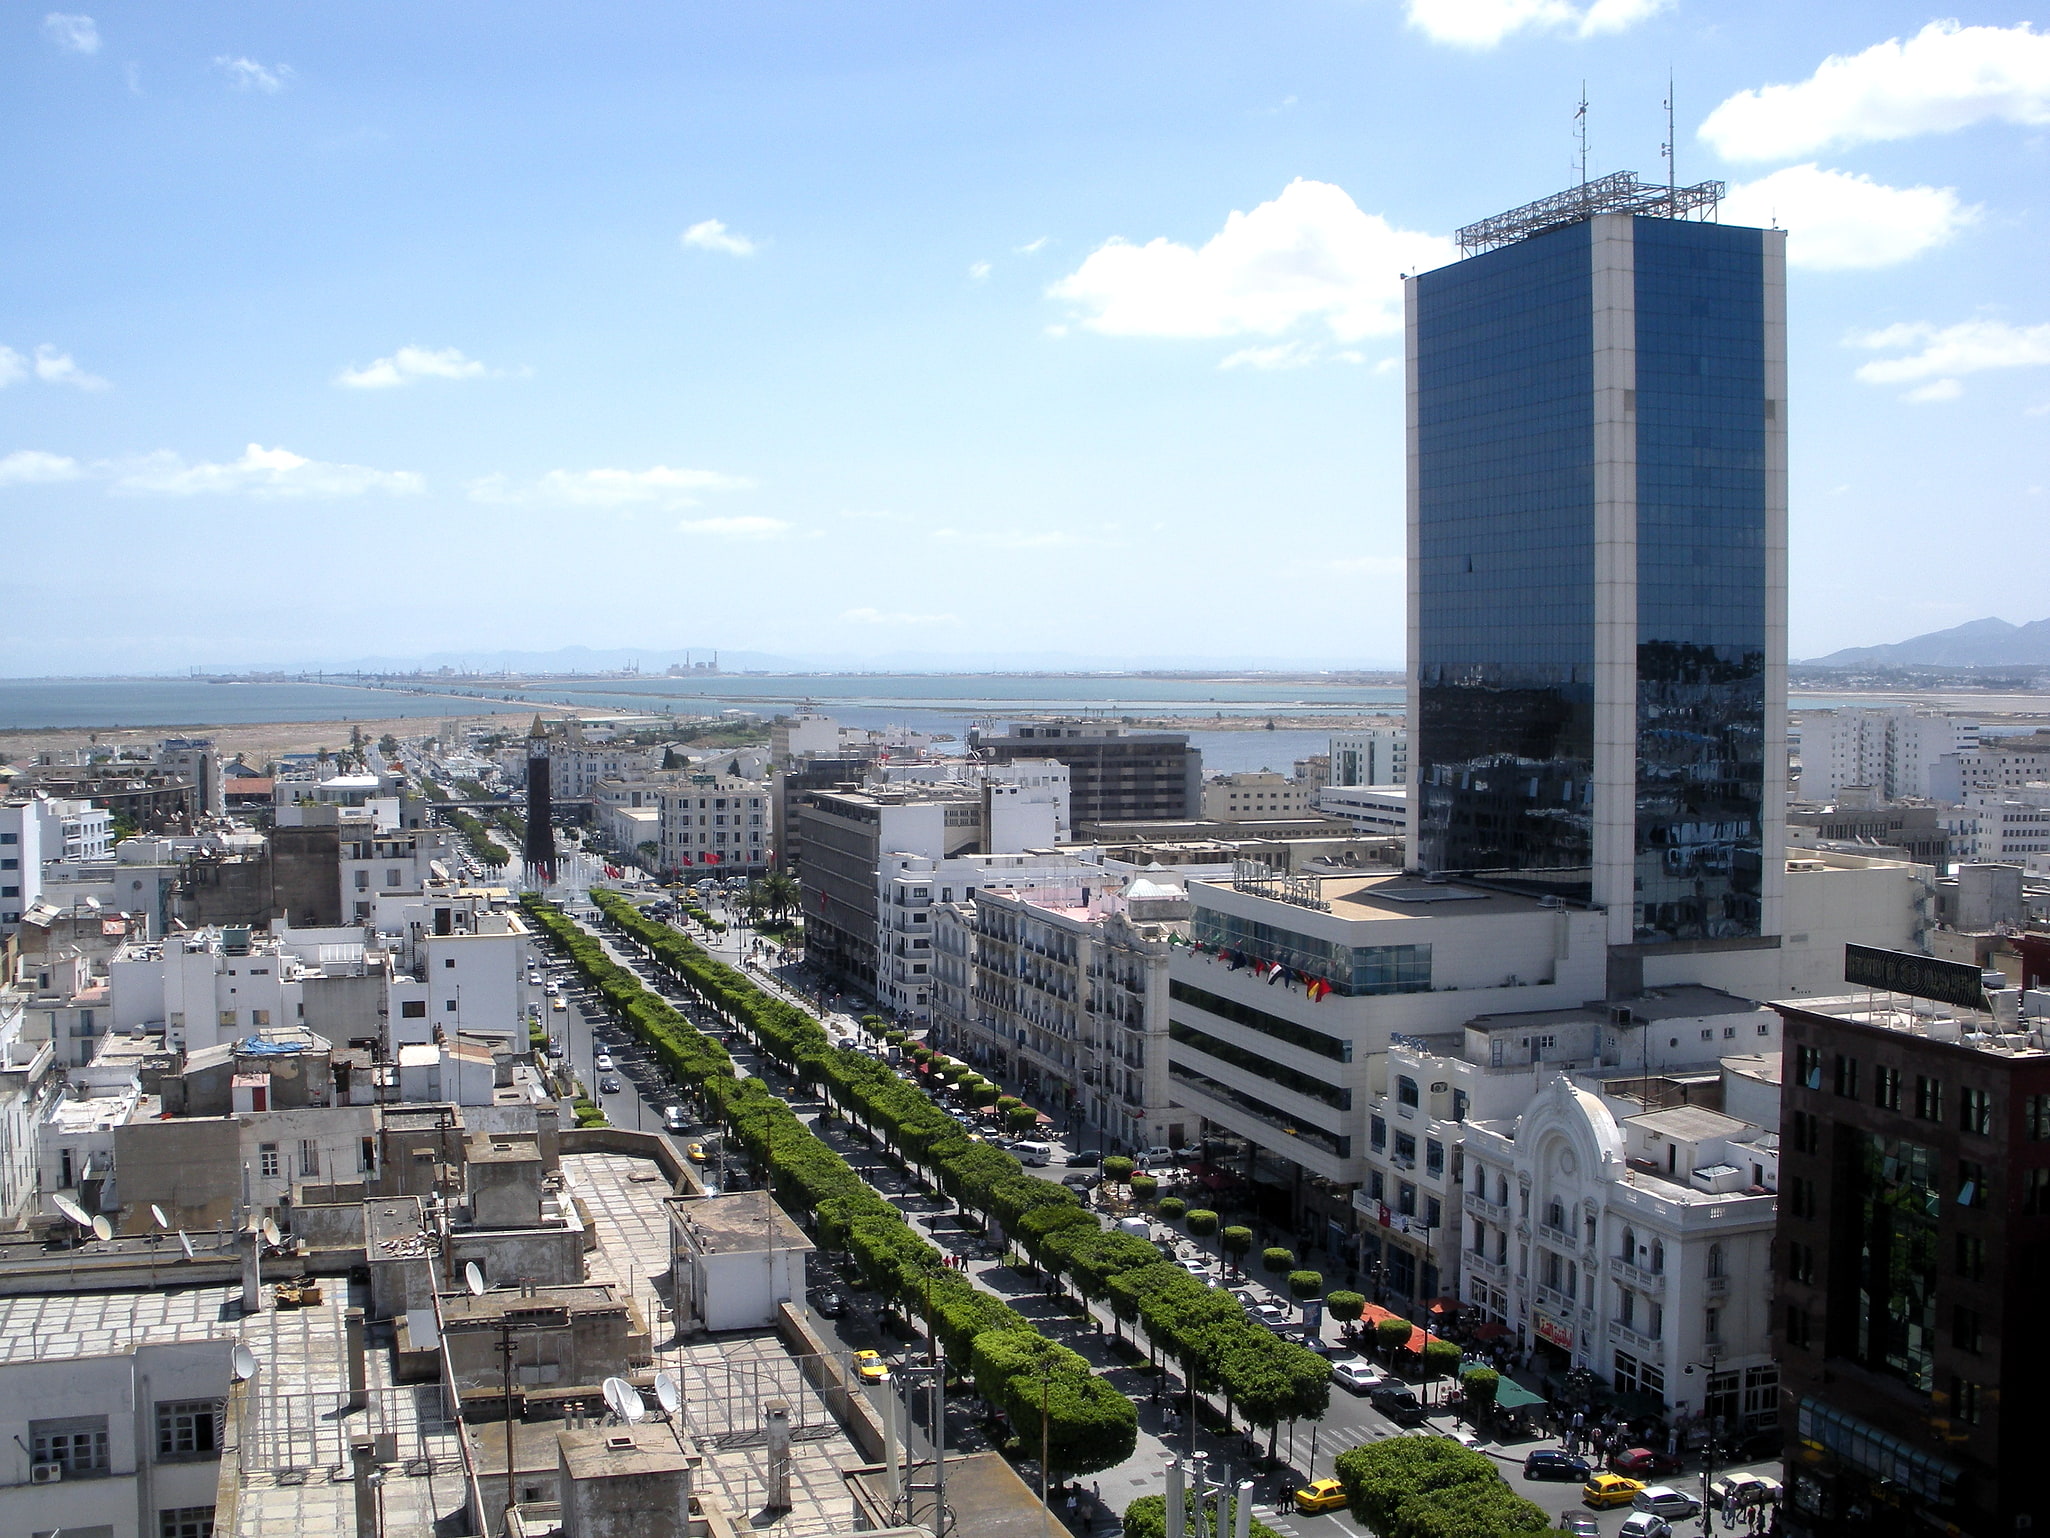 Tunis, Tunesien